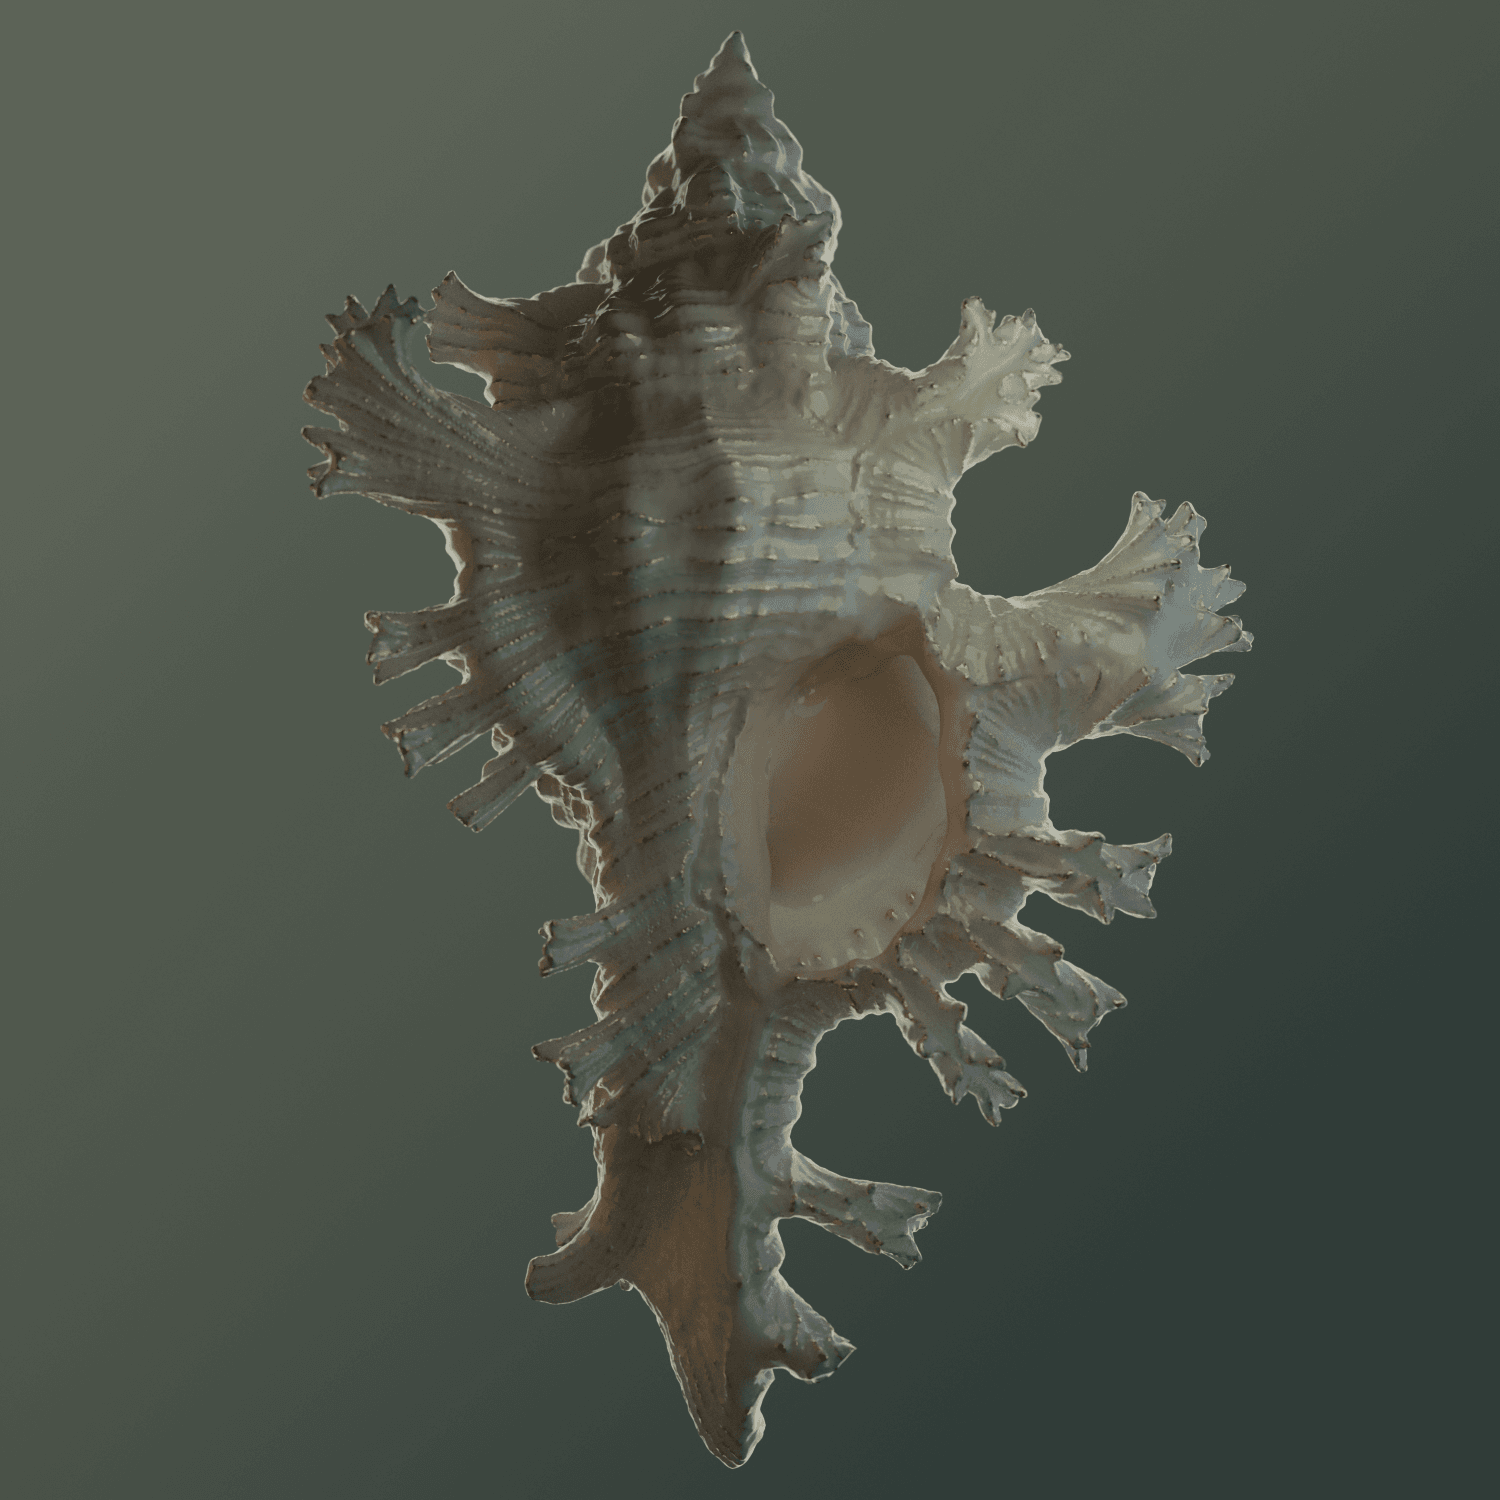 Seashell 001 Deep sea